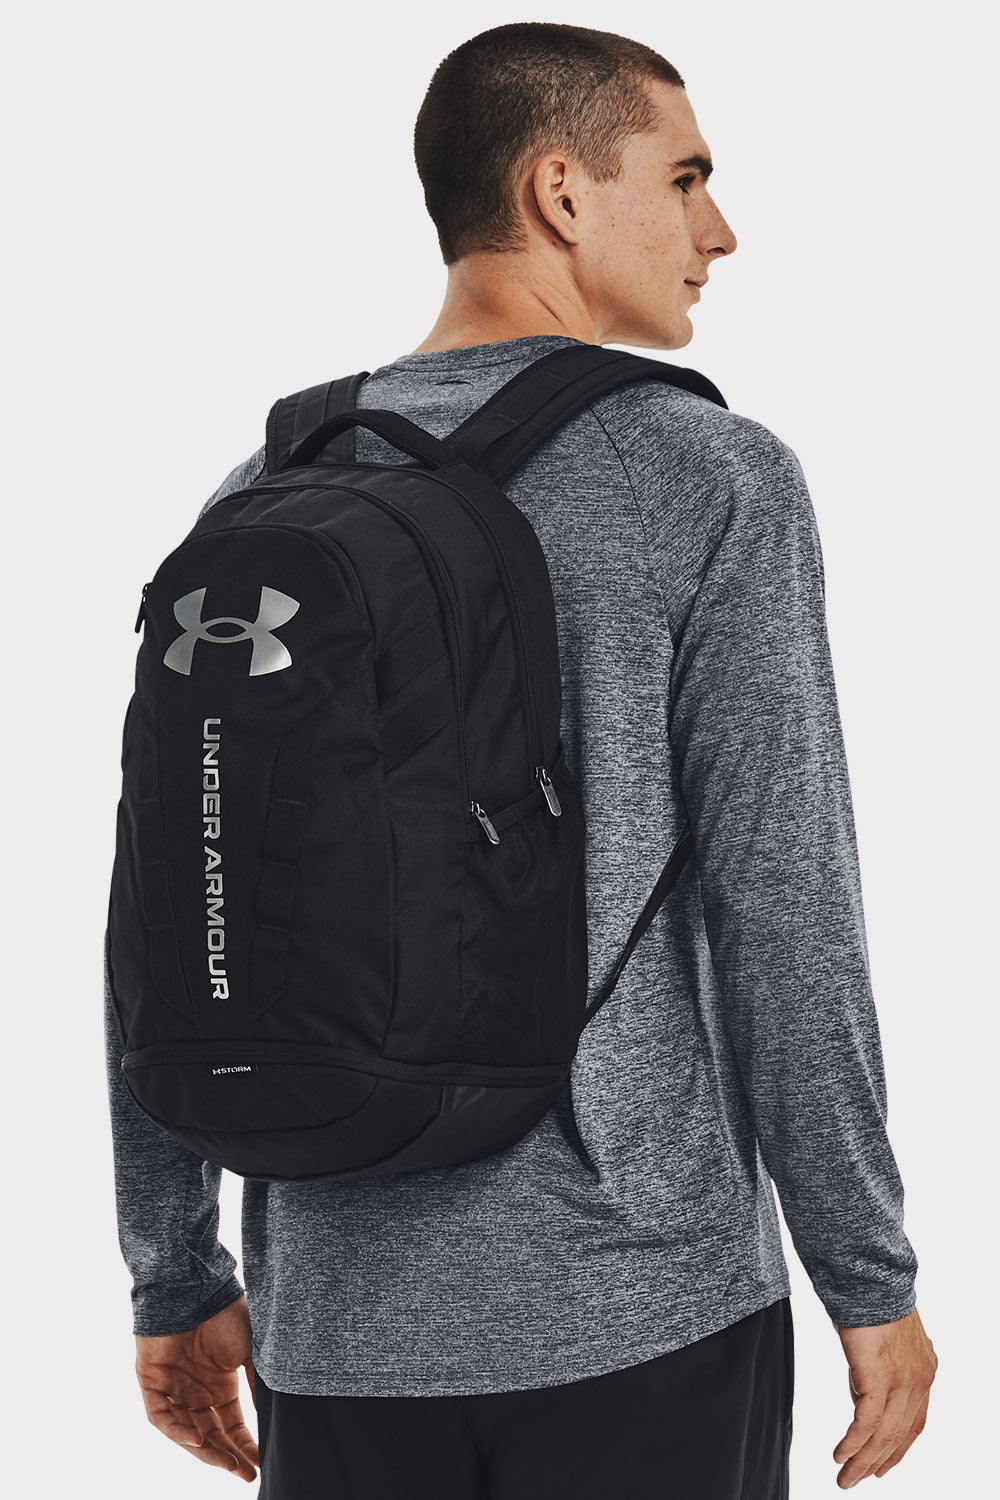 UA Hustle 5.0 Backpack - Sort